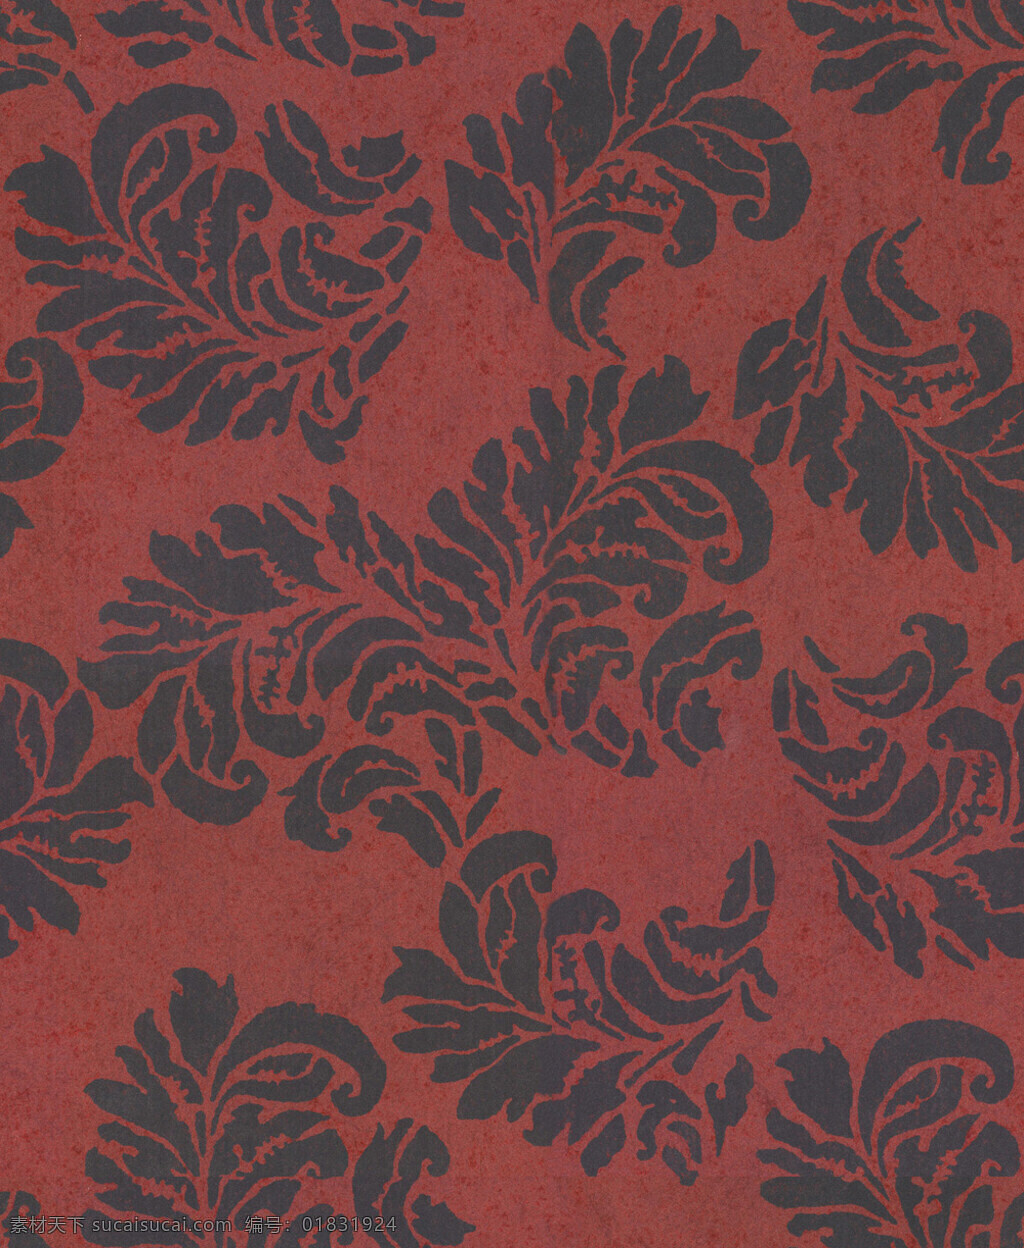 格莱美 波西 米亚 系列 花纹 高清 壁纸 红色 欧式 墙纸 贴图 无缝 波西米亚 3d 材质